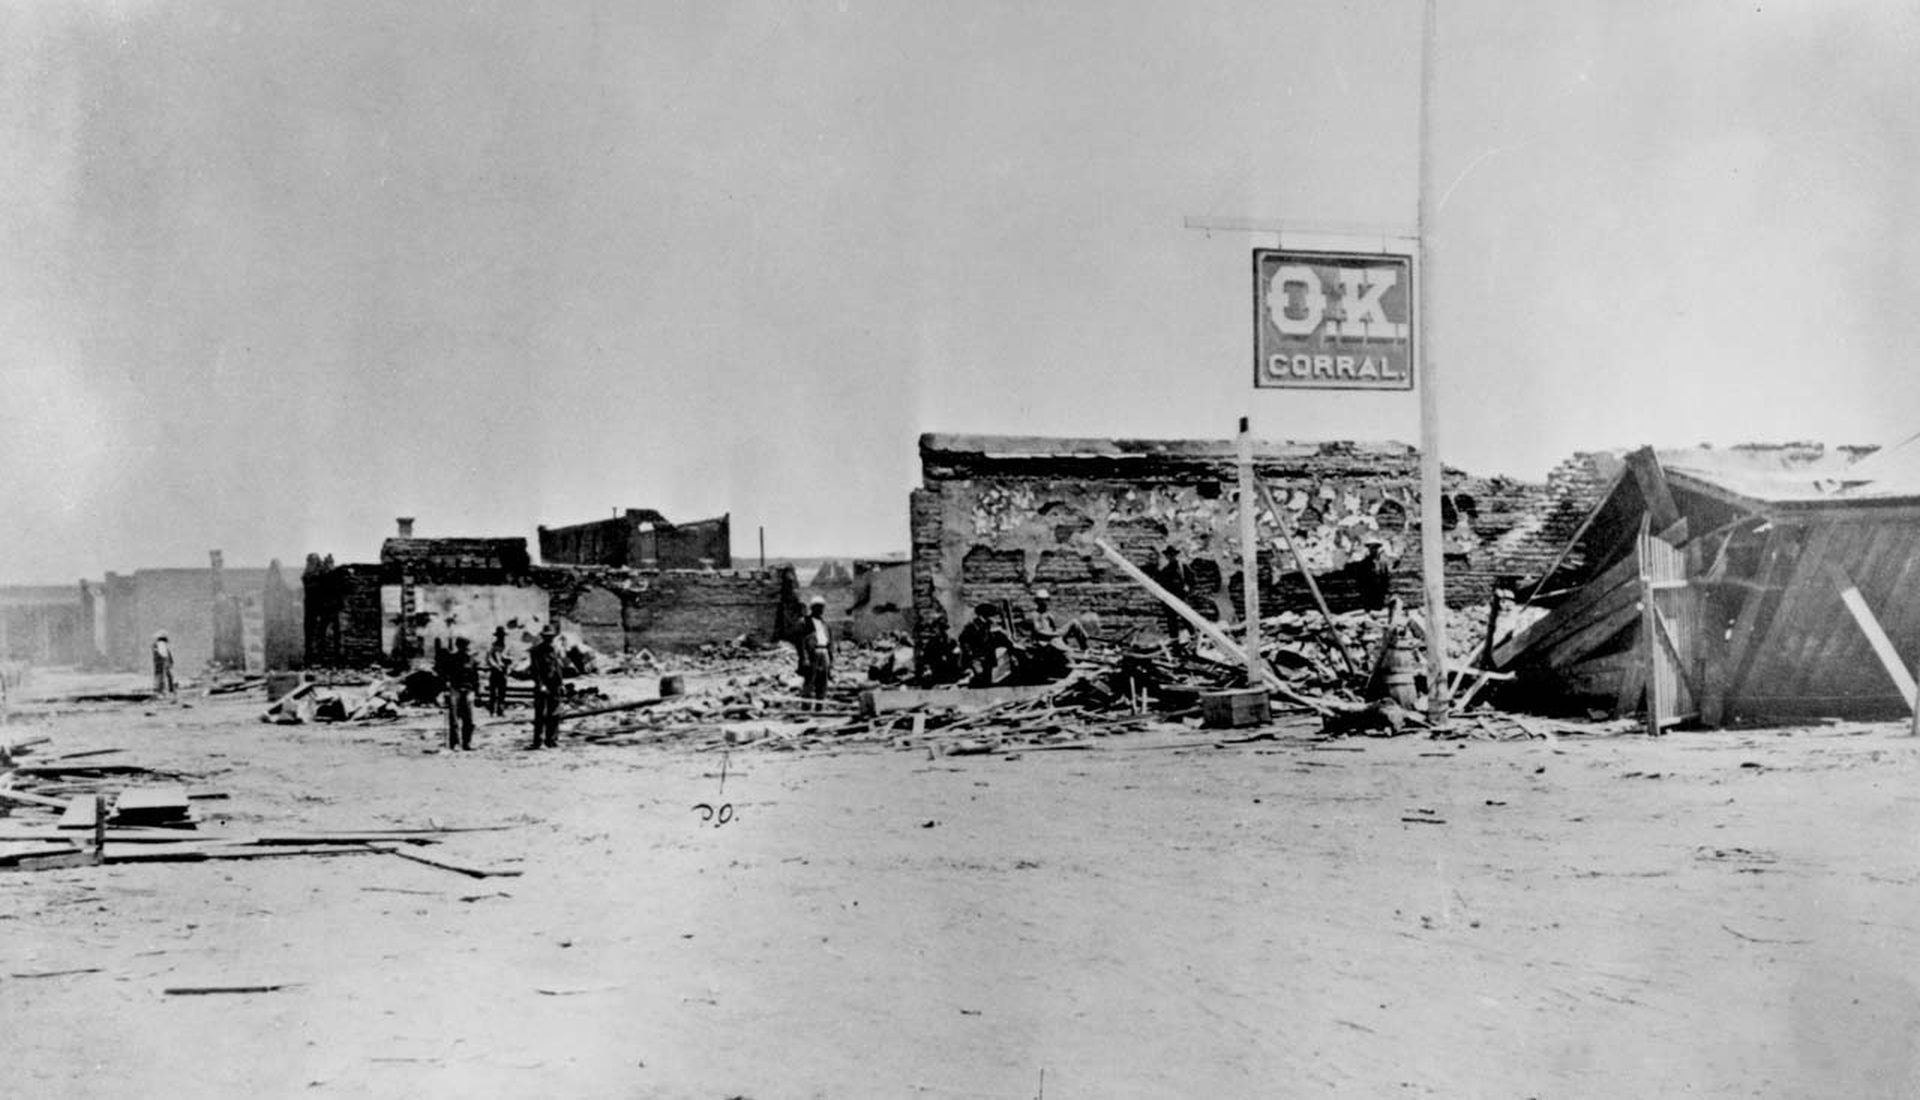 Schwarz-Weiß-Aufnahme des originalen „O.K. Corral“ als Ruine mit eingestürzter Scheune und verbrannter Mauer. Lediglich das Schild mit der Aufschrift „O.K. Corral“ ist intakt.